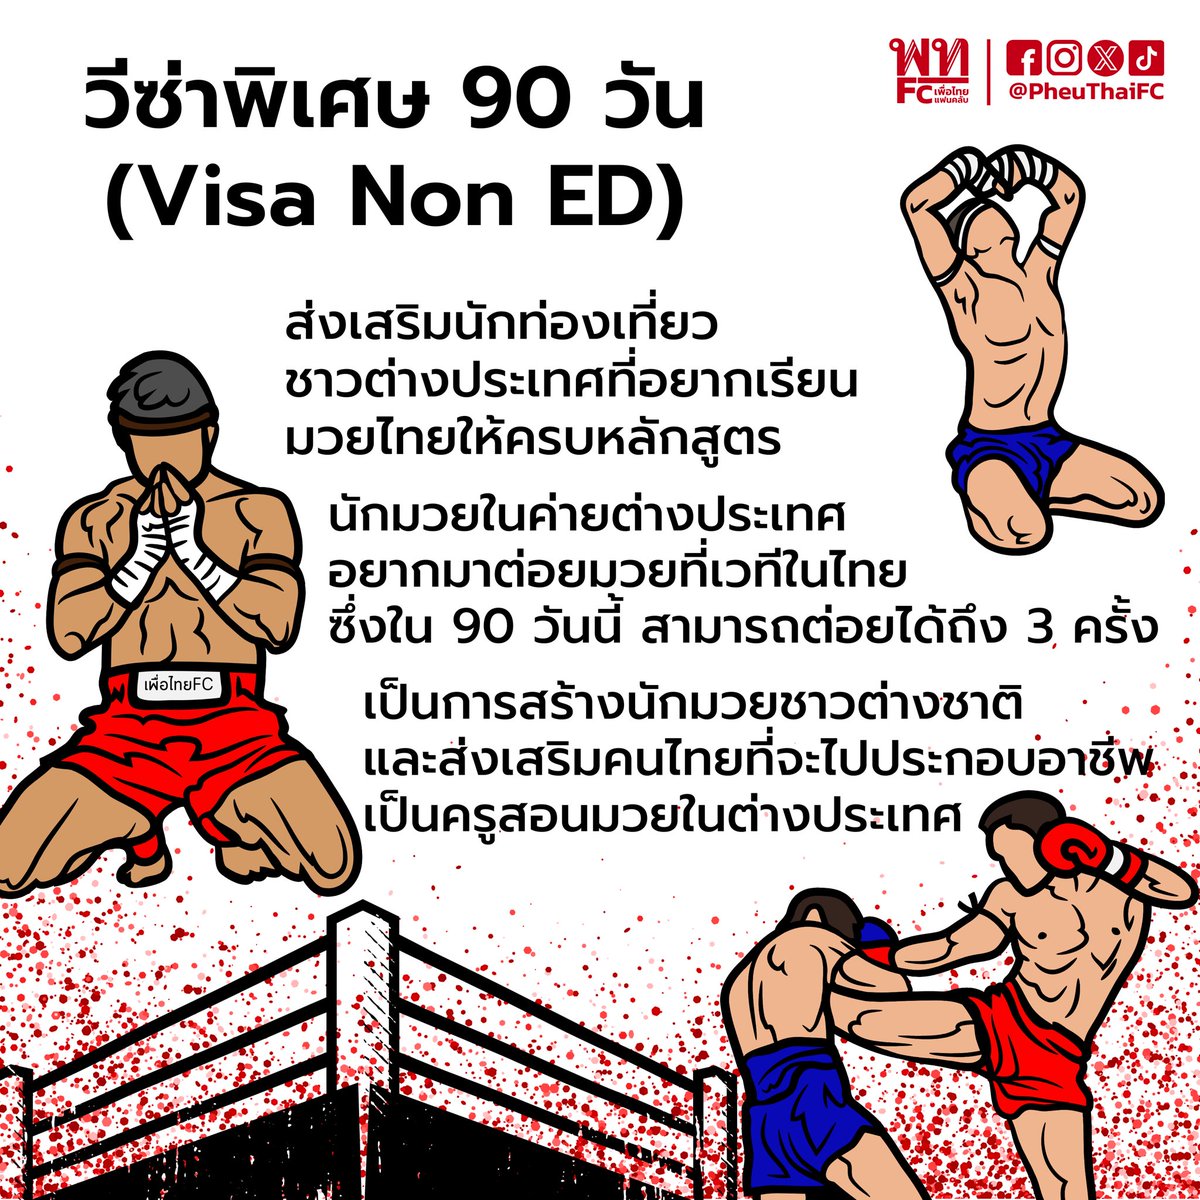 เดินหน้า #softpower มวยไทย ฟรีวีซ่า90 วัน (Visa Non ED)” เพื่อส่งเสริมนักท่องเที่ยวต่างประเทศ ส่งเสริมการท่องเที่ยว ต่อยอดศิลปะ #มวยไทย
กระตุ้นเศรษฐกิจ เงินสะพัดเข้าประเทศ
#แบนตึกส้ม